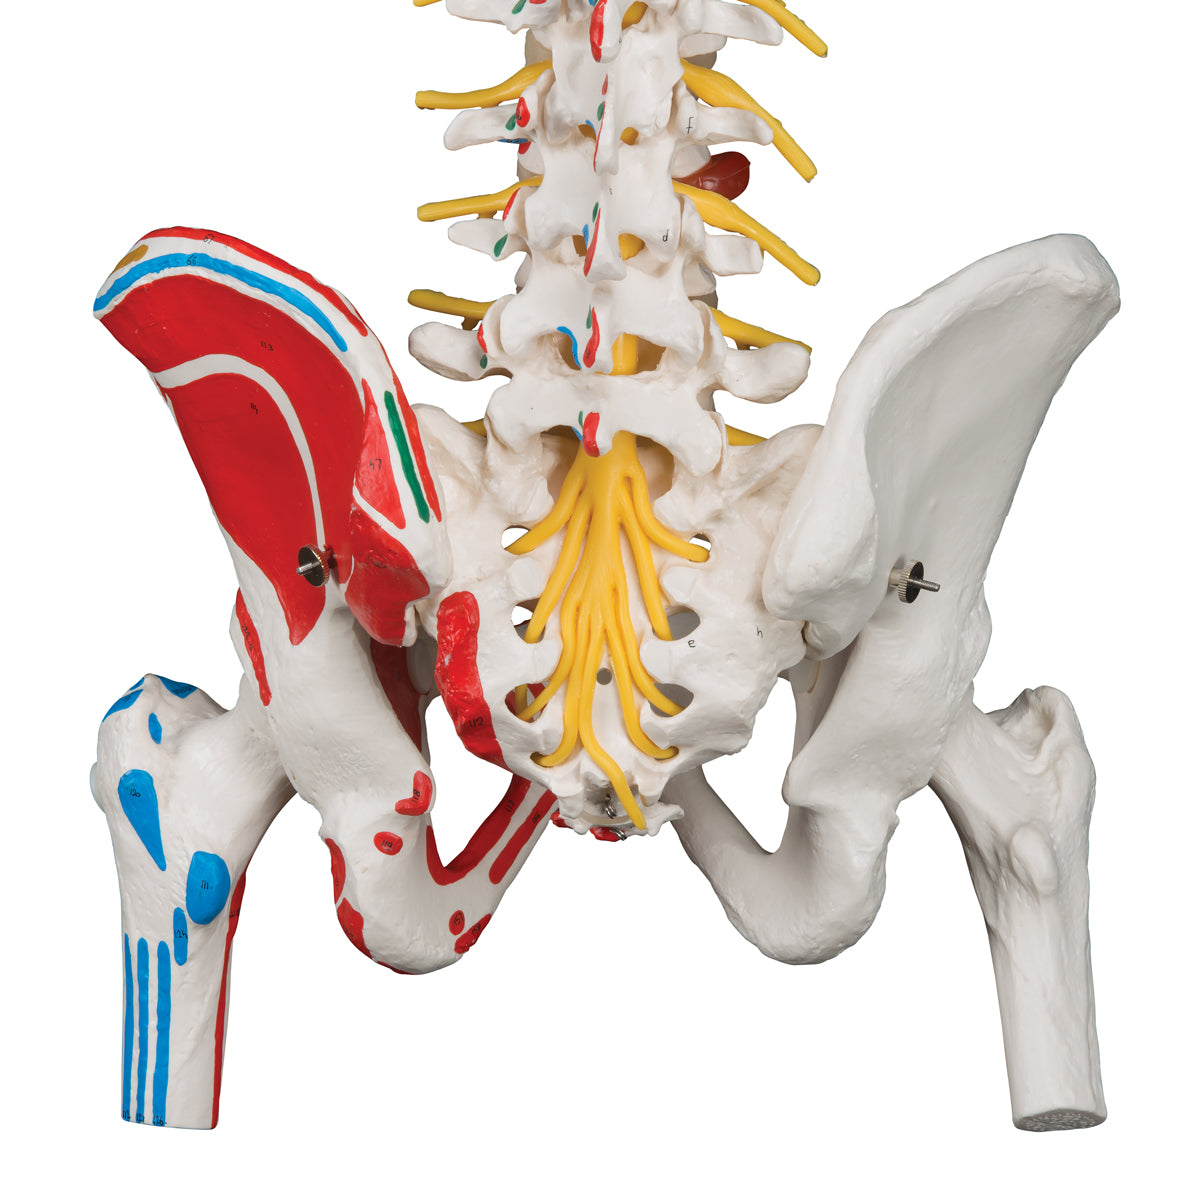 Fleksibel model af rygsøjlen med nerver, muskelangivelser og andre knogler uden stativ